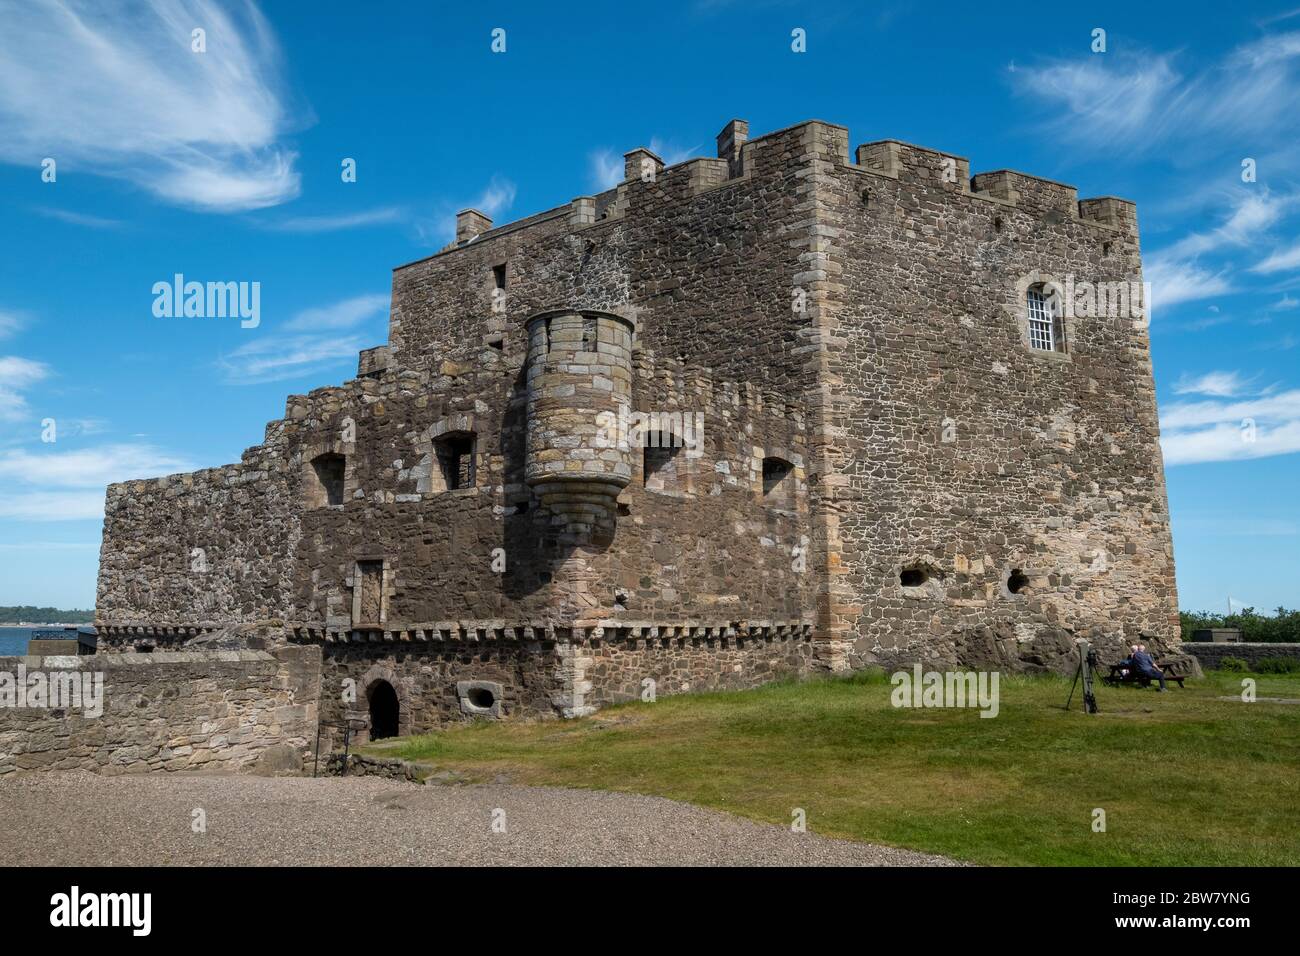 El castillo de la oscuridad en las orillas del Firth de Forth, West Lothain. Ha sido utilizado como una localización de cine y más recientemente en la serie de televisión Outlander. Foto de stock